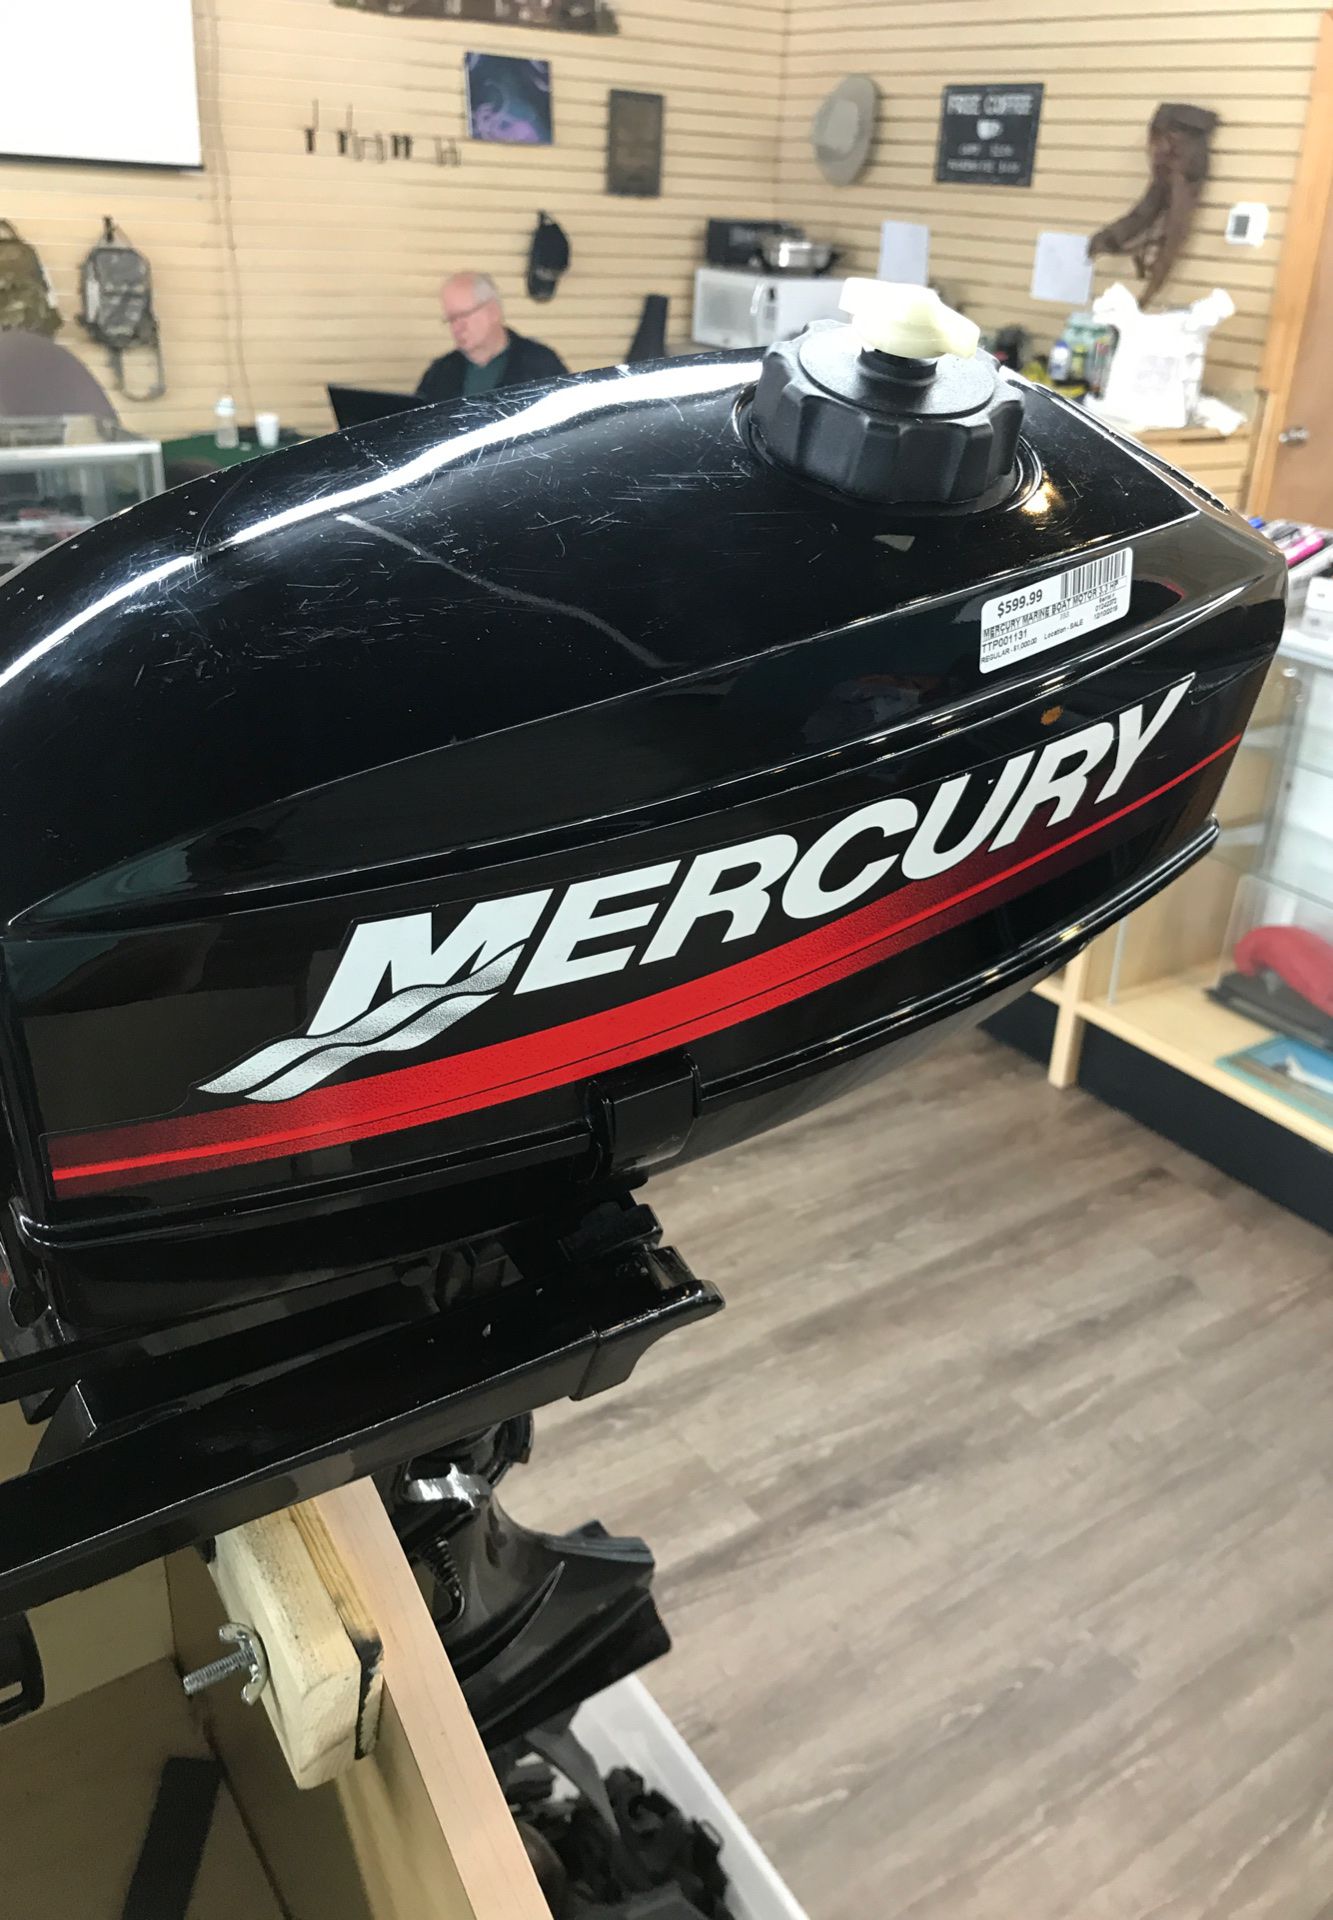 Mercury 3.3 hp outboard motor